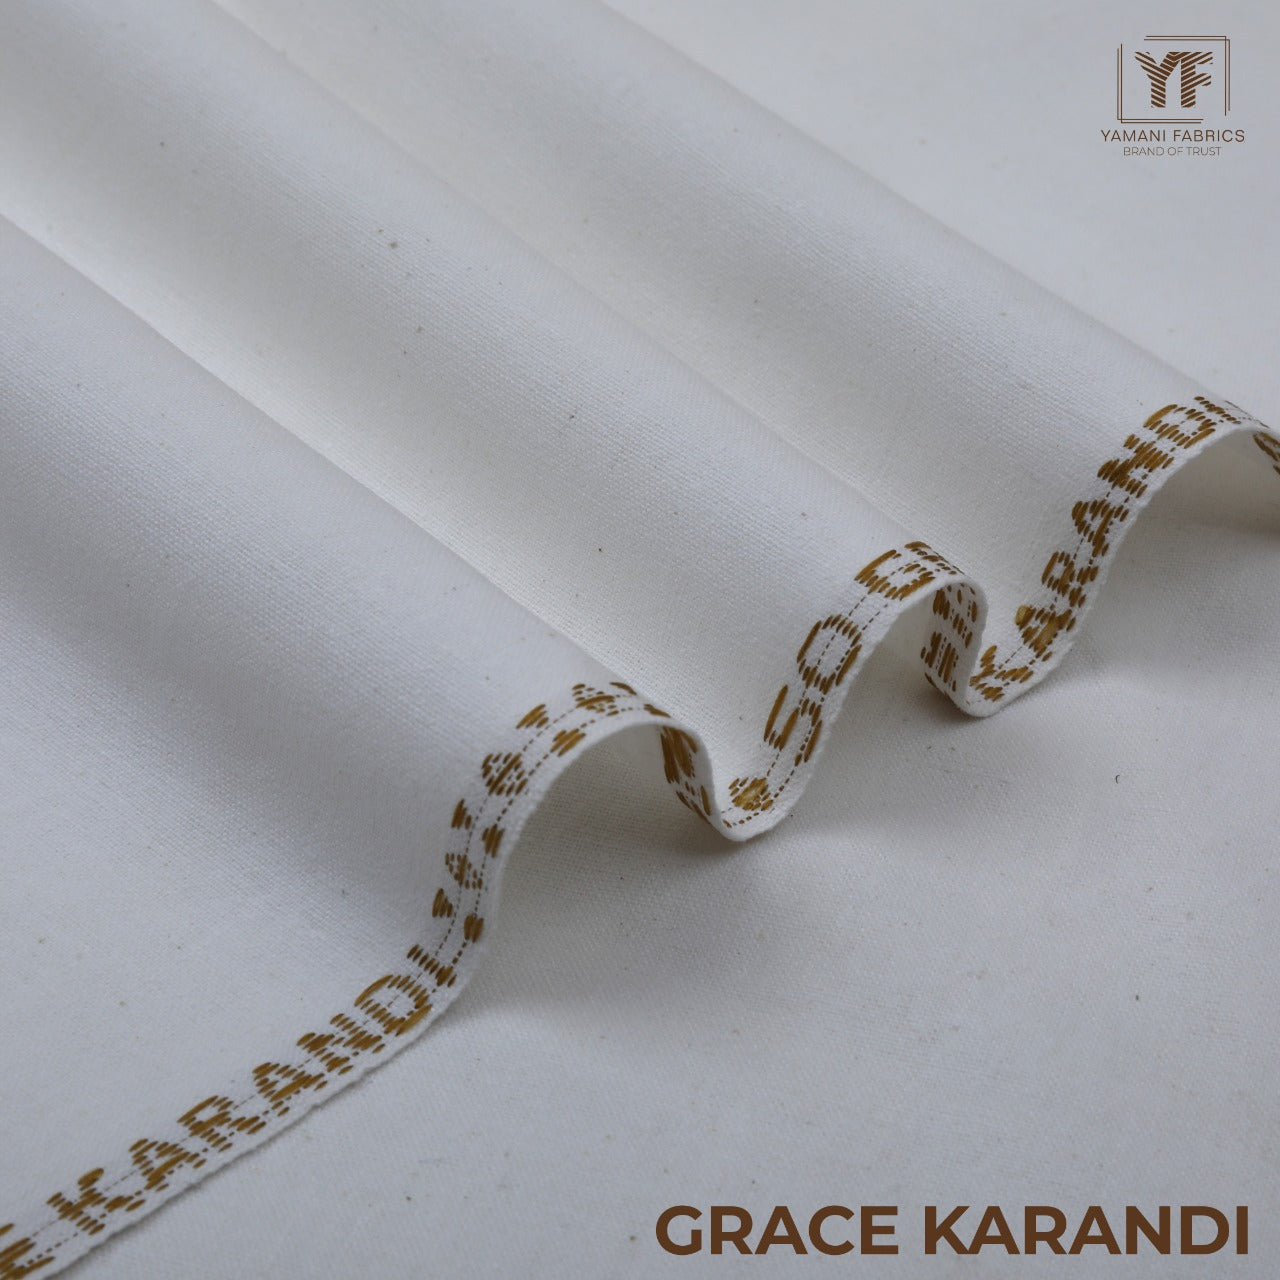 Grace Karandi 01 Fabric Gents Unstitched Khaddar Suit White 001